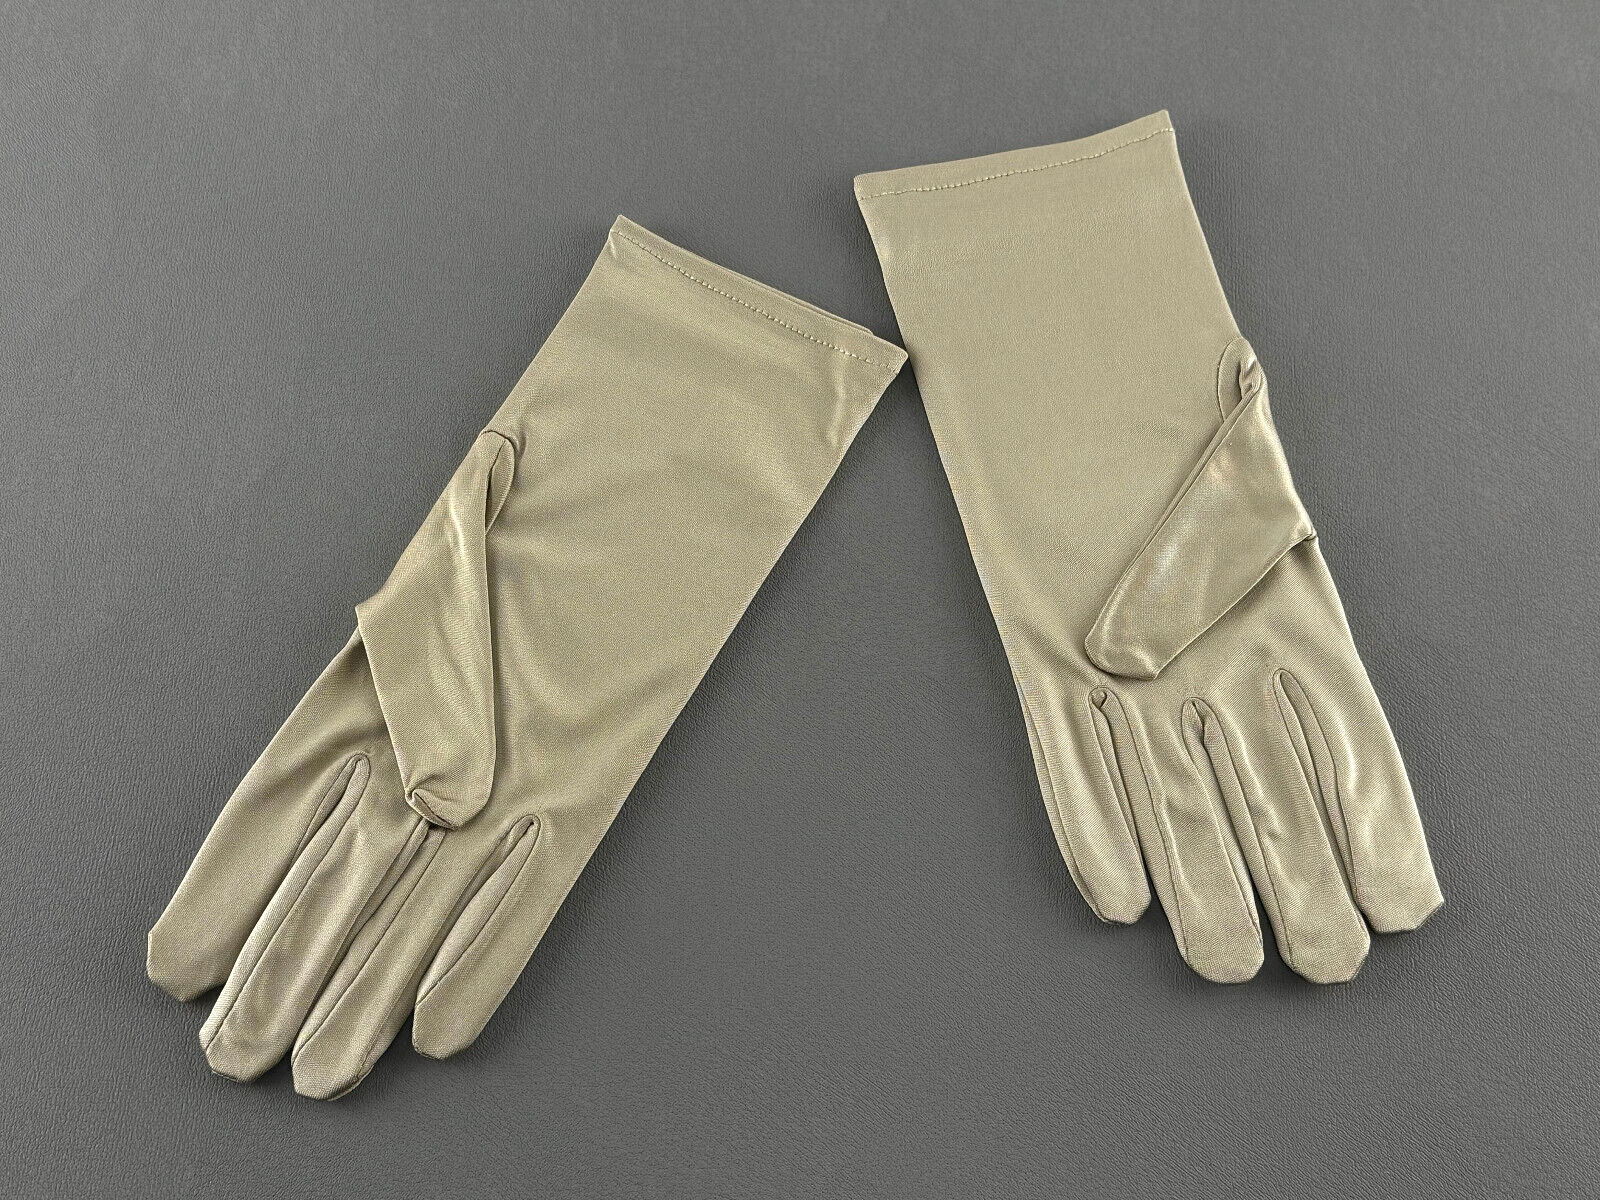 Rolex jeweler gloves beige